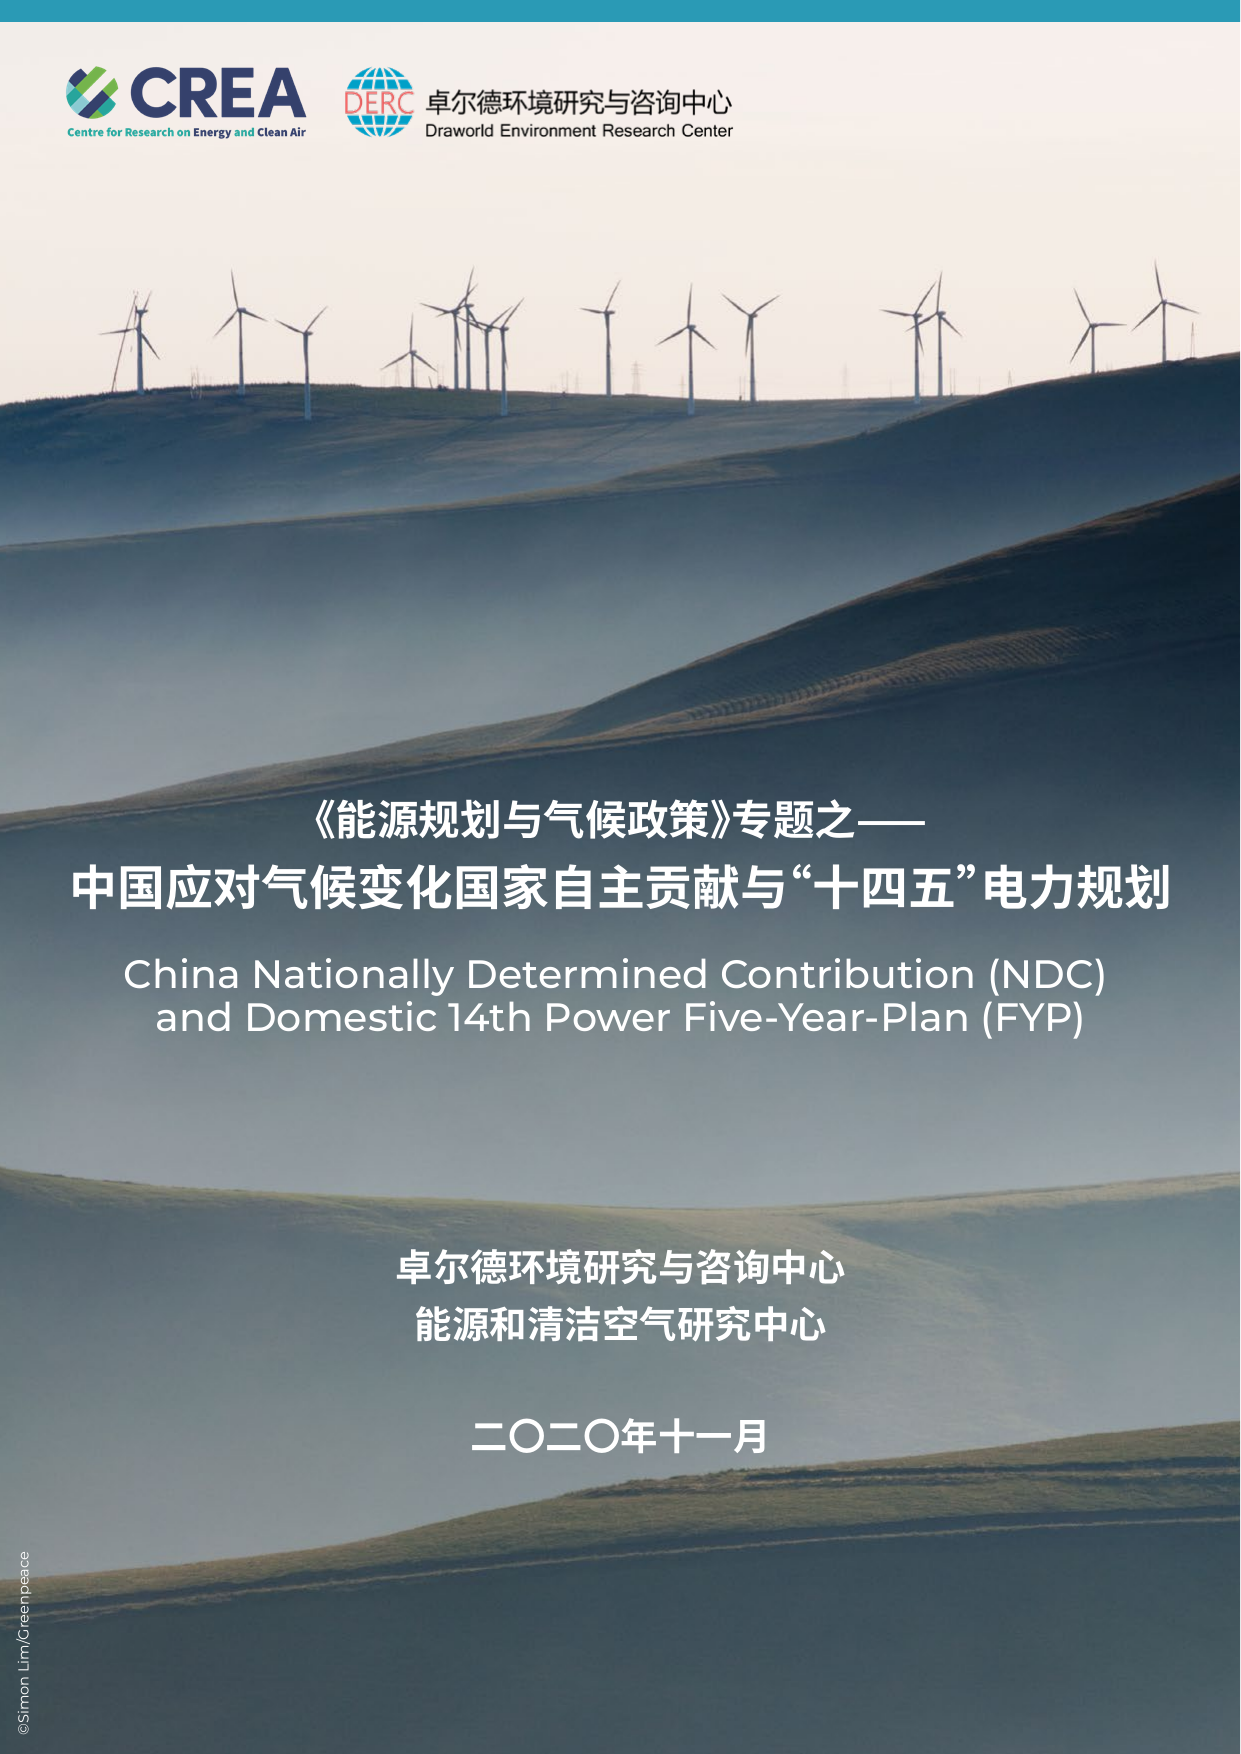 中国应对气候变化国家自主贡献与“十四五”电力规划-CREA&DERC-2020.11-42页